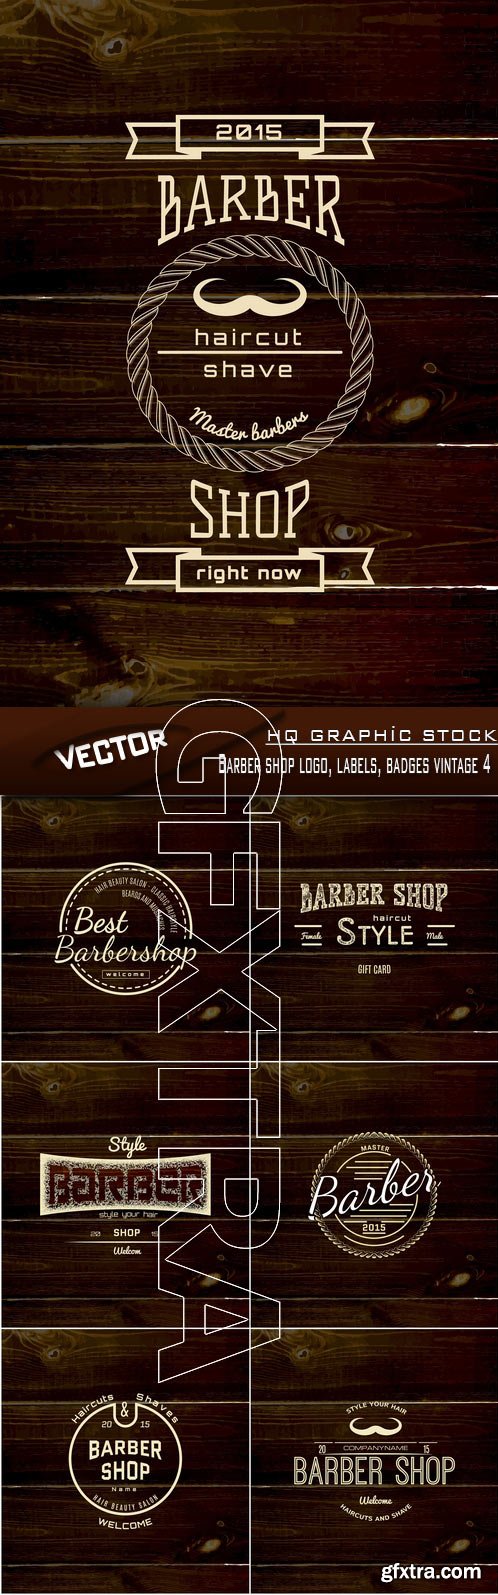 Stock Vector - Barber shop logo, labels, badges vintage 4